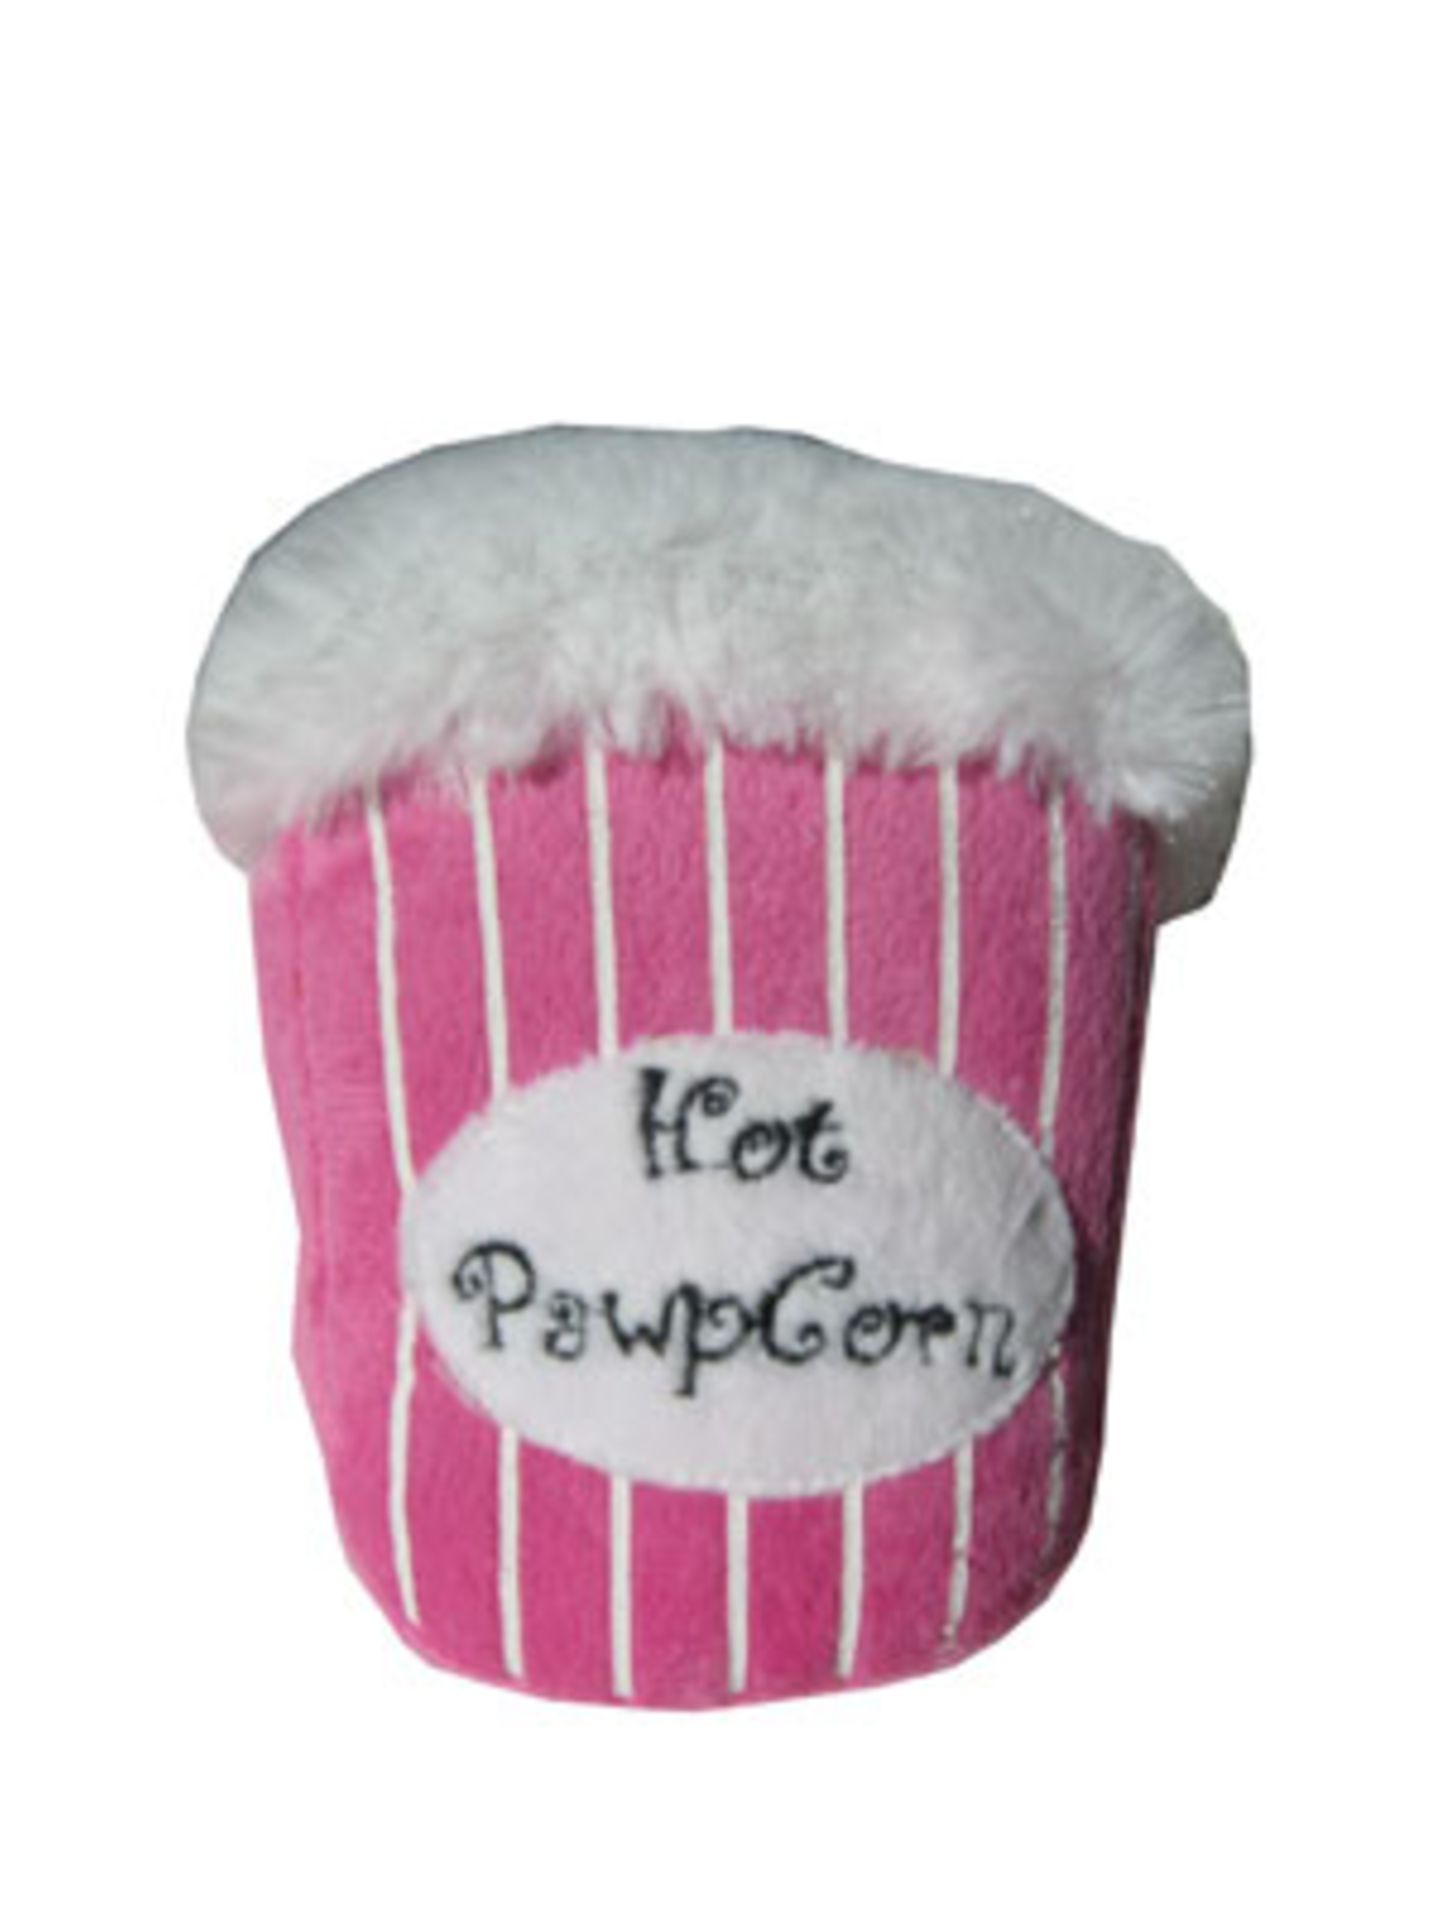 Stoff-Spielzeug "Hot Pawpcorn" - natürlich in Pink - von Pinja Fashion, um 11 Euro.